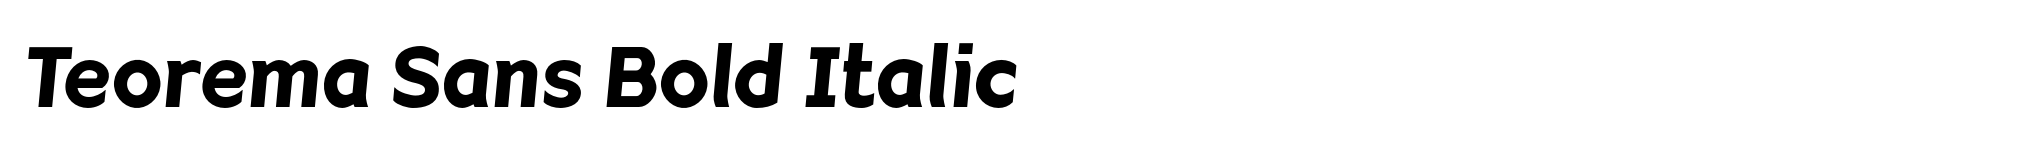 Teorema Sans Bold Italic image